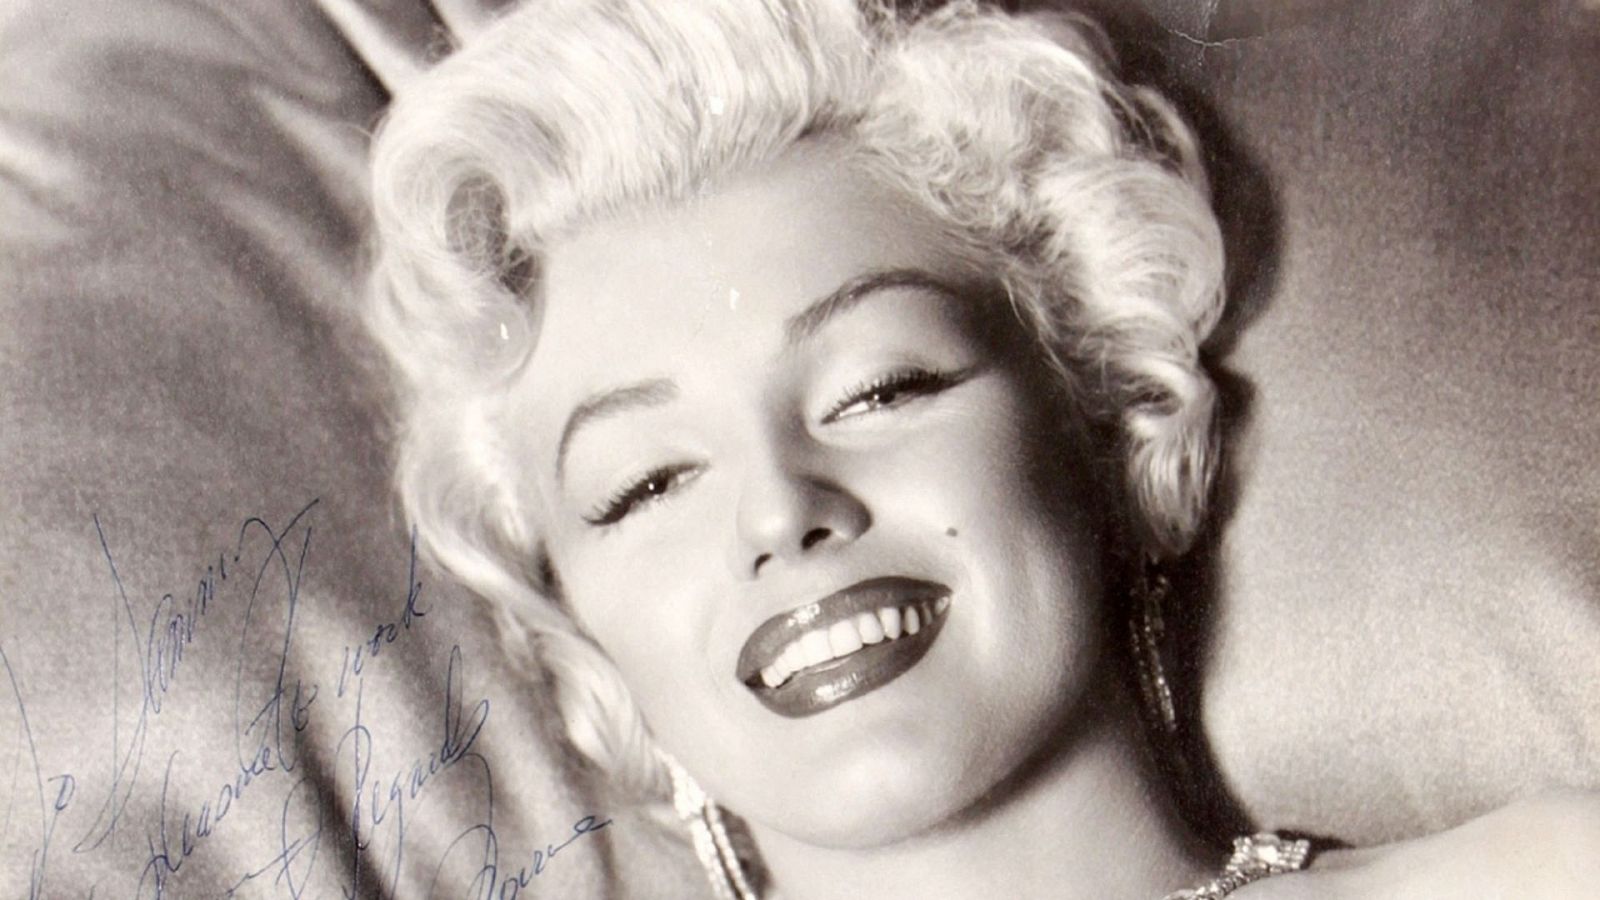 El ojo crítico - Los 'Fragmentos' más personales de Marilyn Monroe - Escuchar ahora